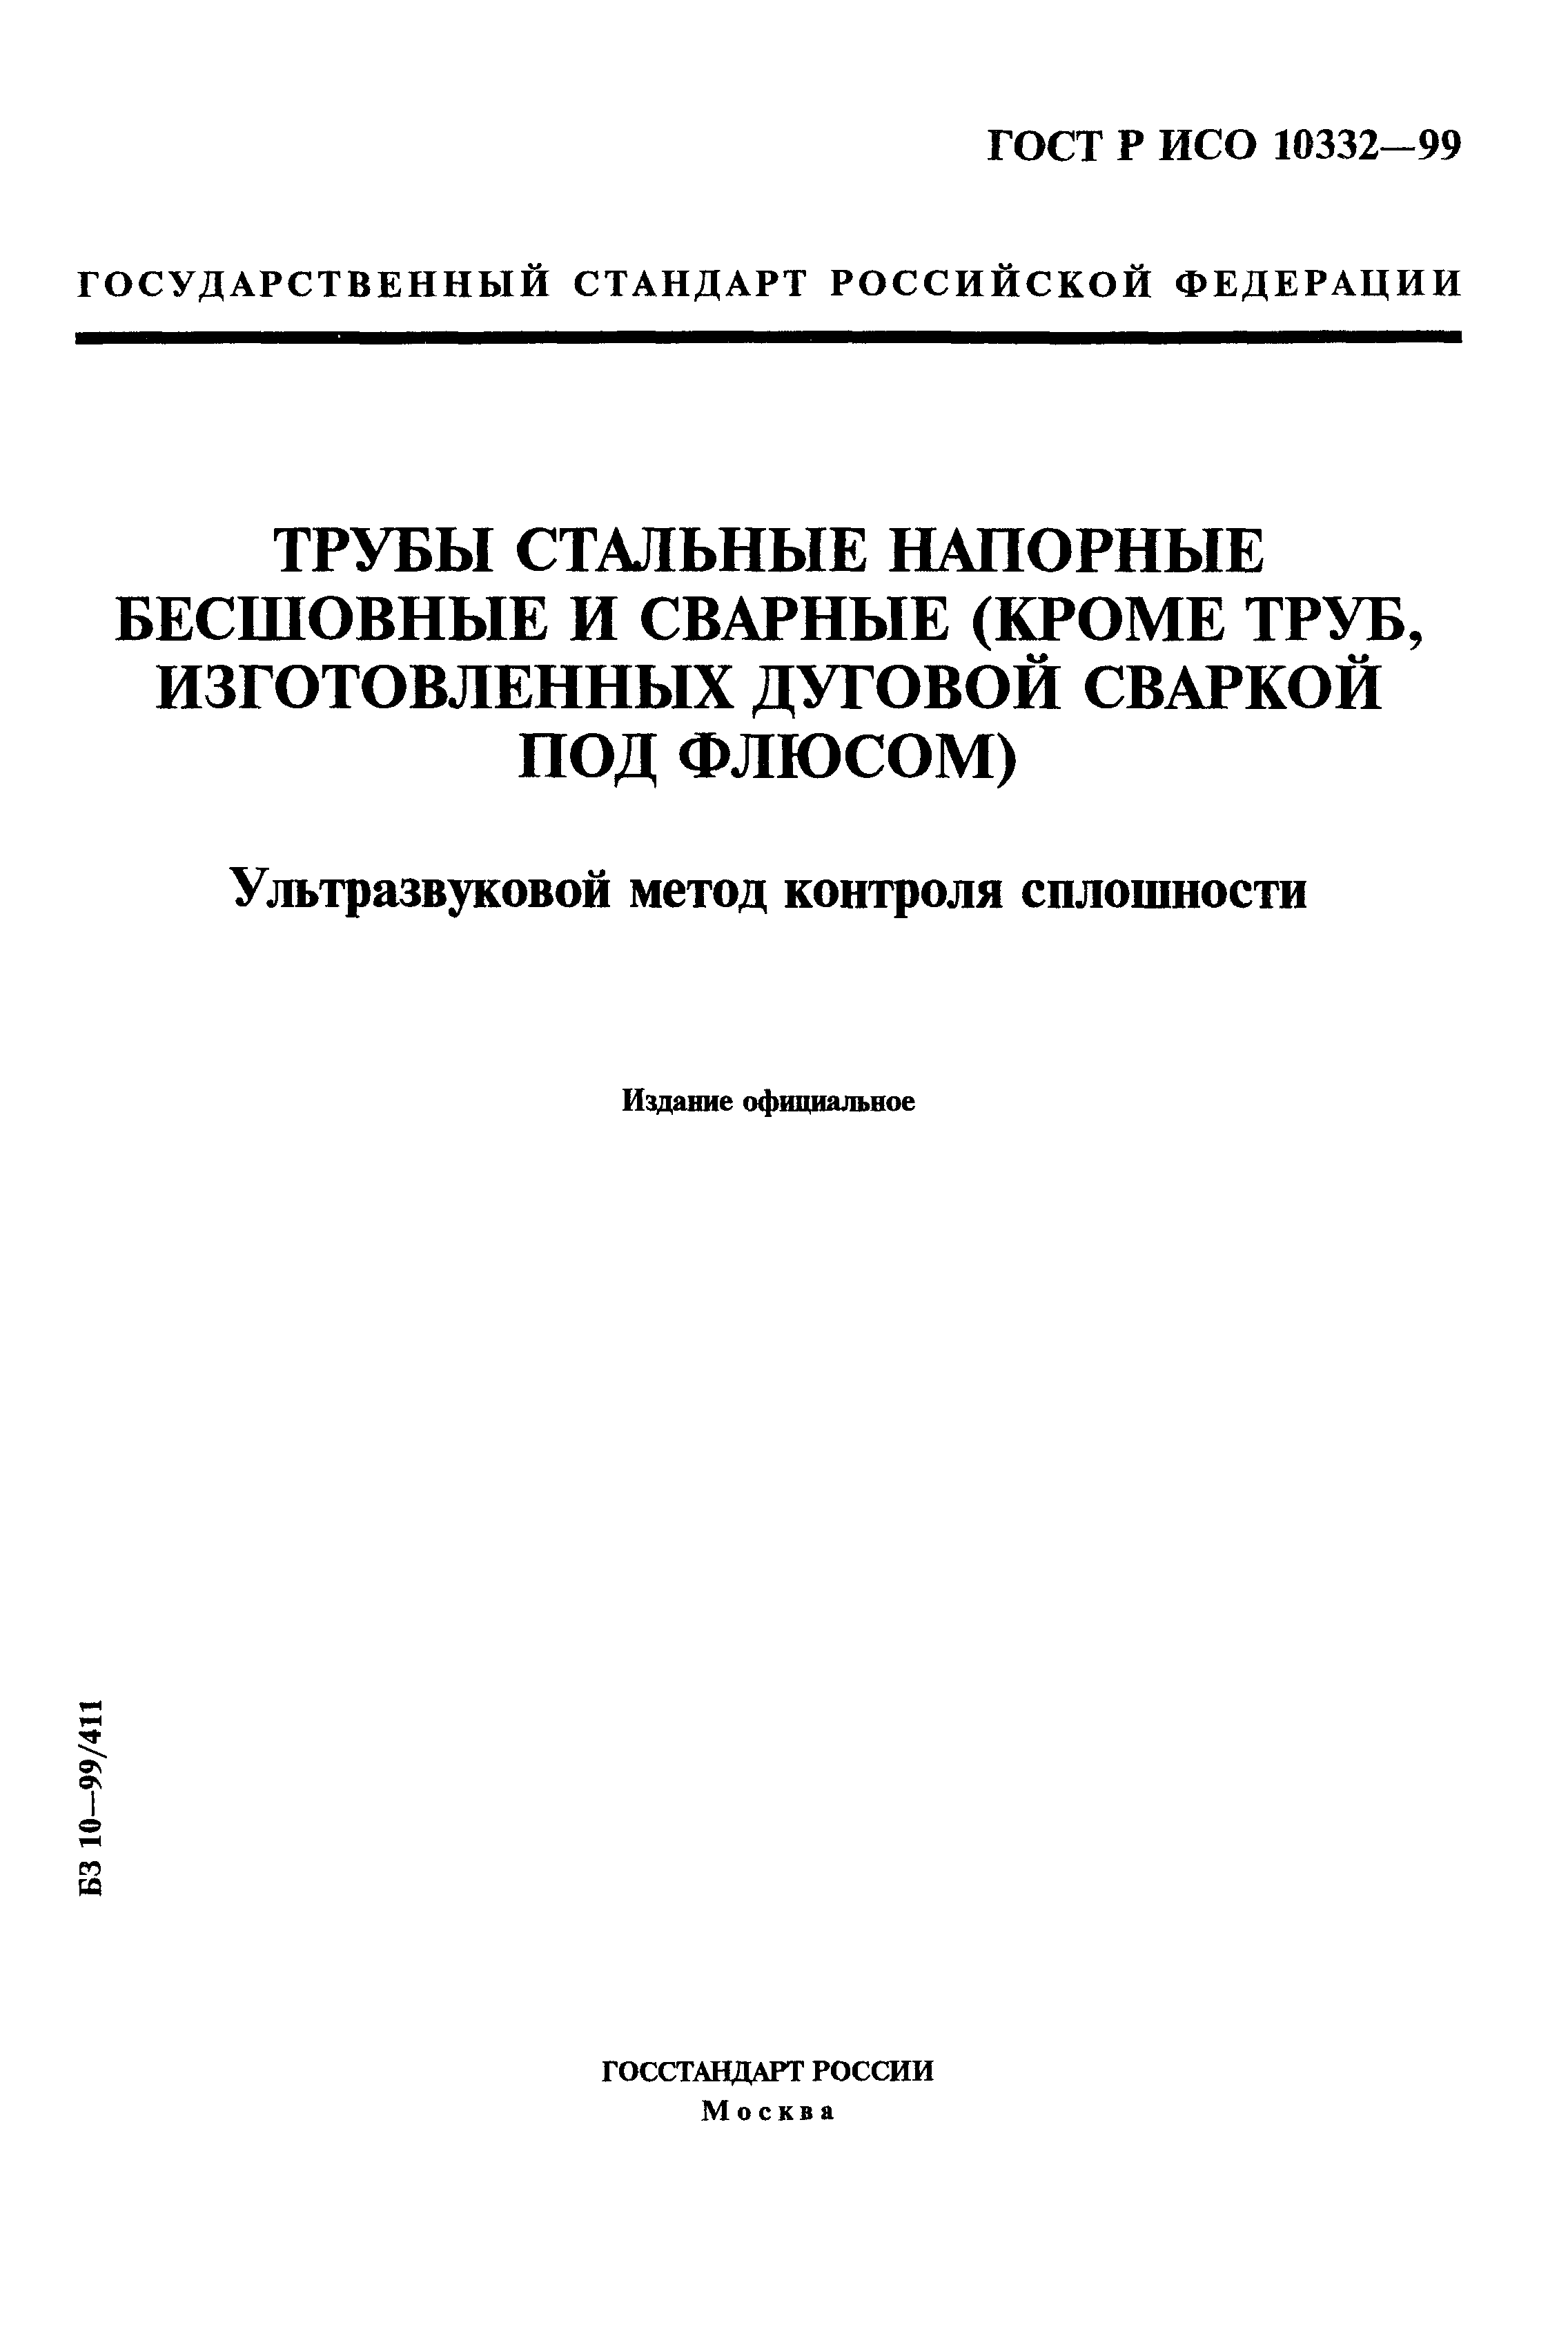 ГОСТ Р ИСО 10332-99